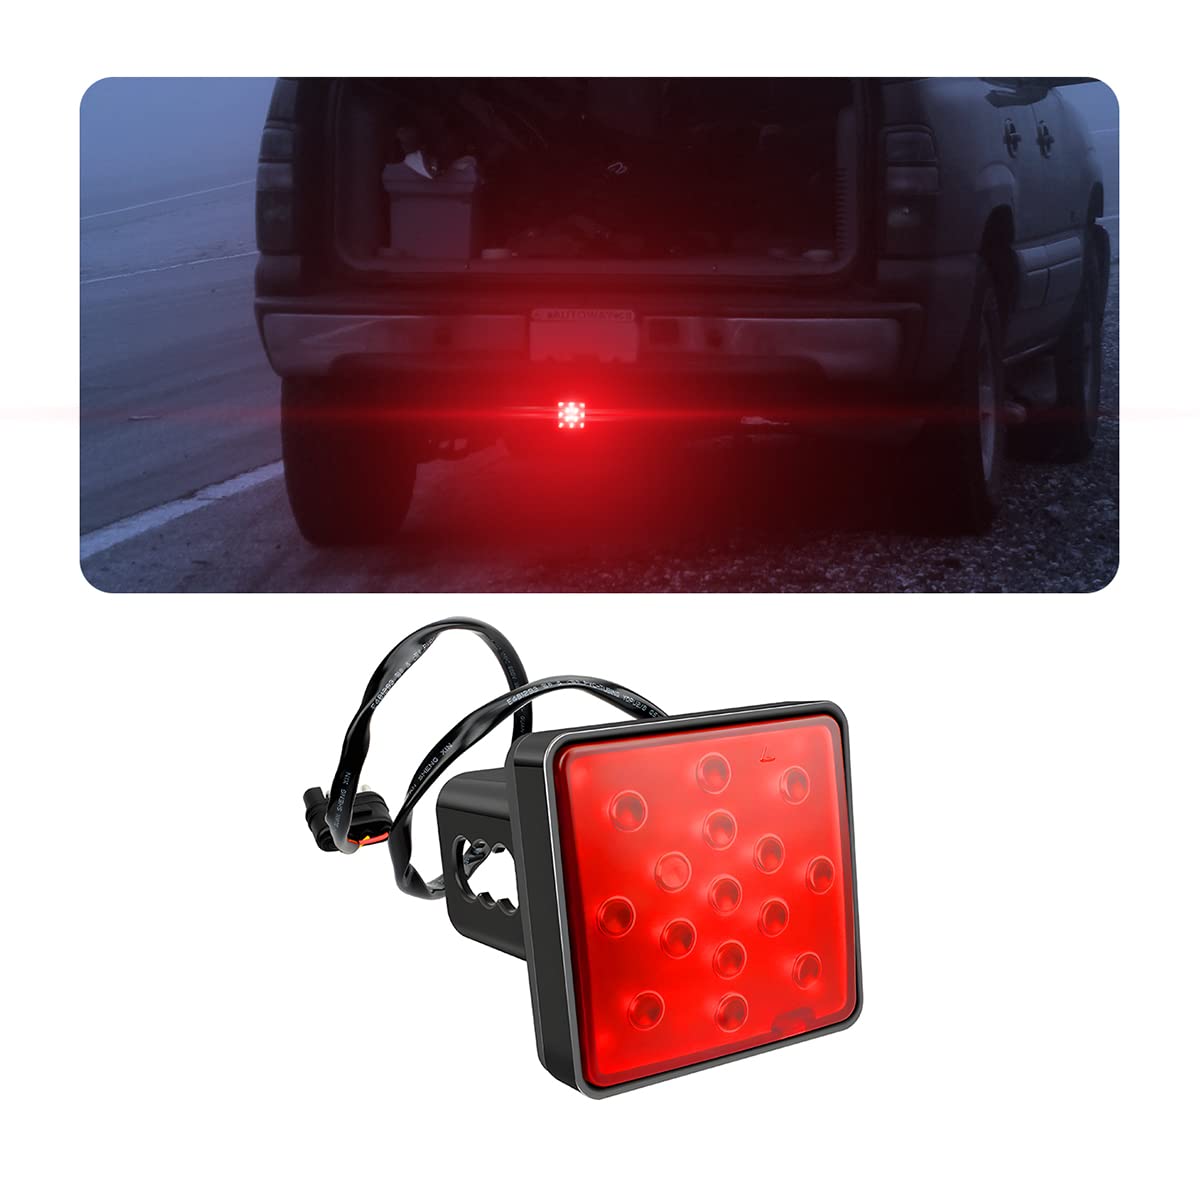 CGEAMDY 15 LED Rückleuchten für KFZ Anhänger, Kfz-Blinker, Bremslicht Abdeckung, Rückstrahler für Das Fahrzeug, Universal-Rücklicht für LKW Anhänger Wohnwagen Van(Rot) von CGEAMDY